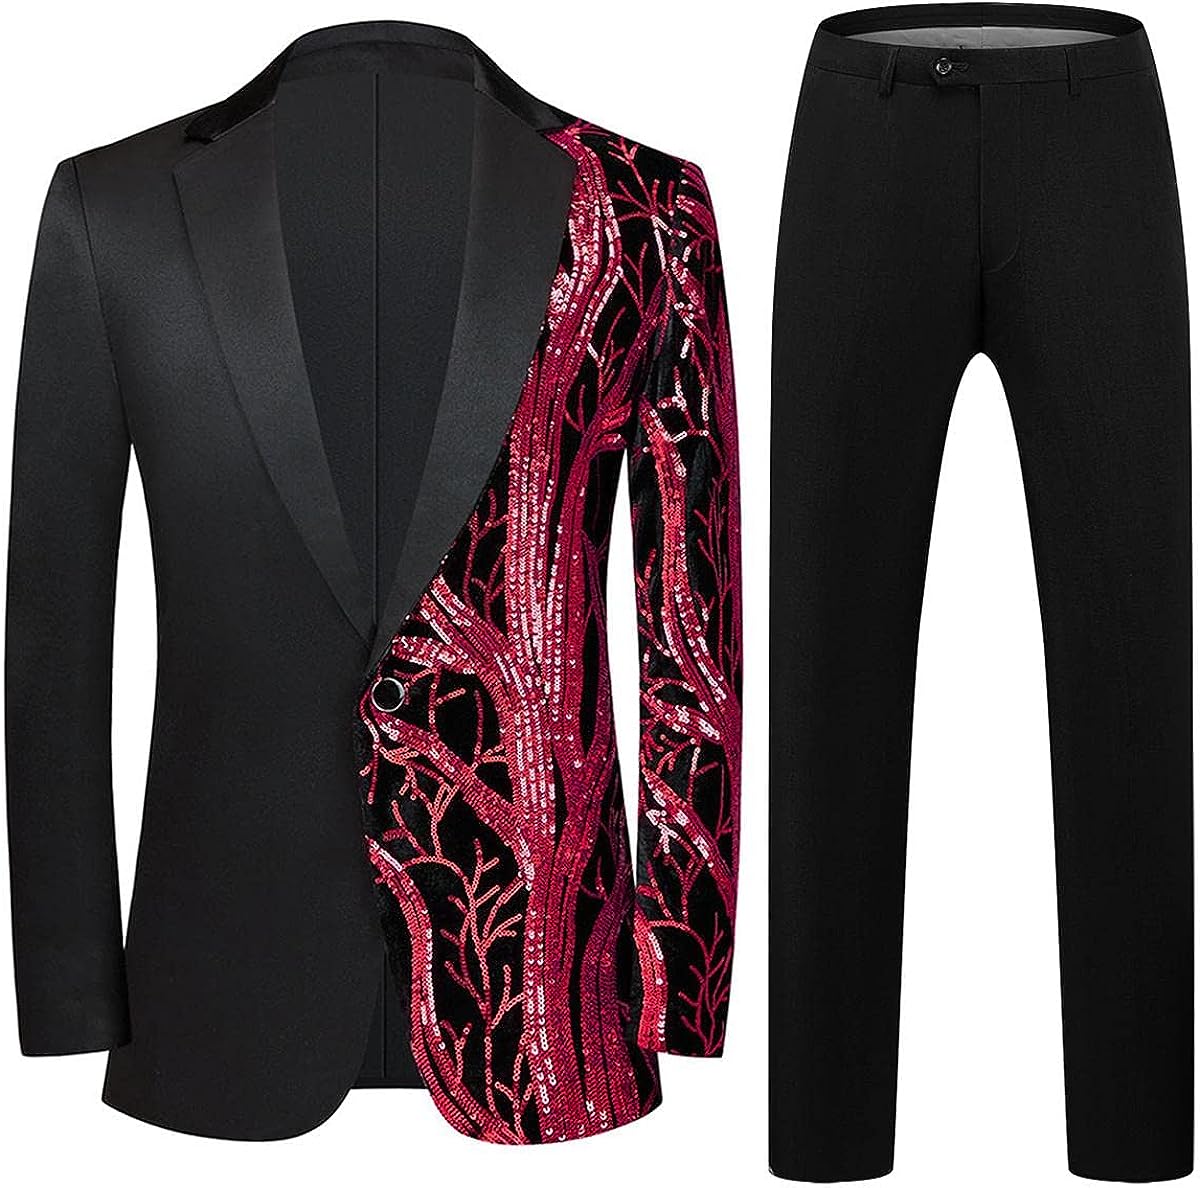 Men's Fashionable Tuxedo Black/Red Sequin Blazer & Pants Suit